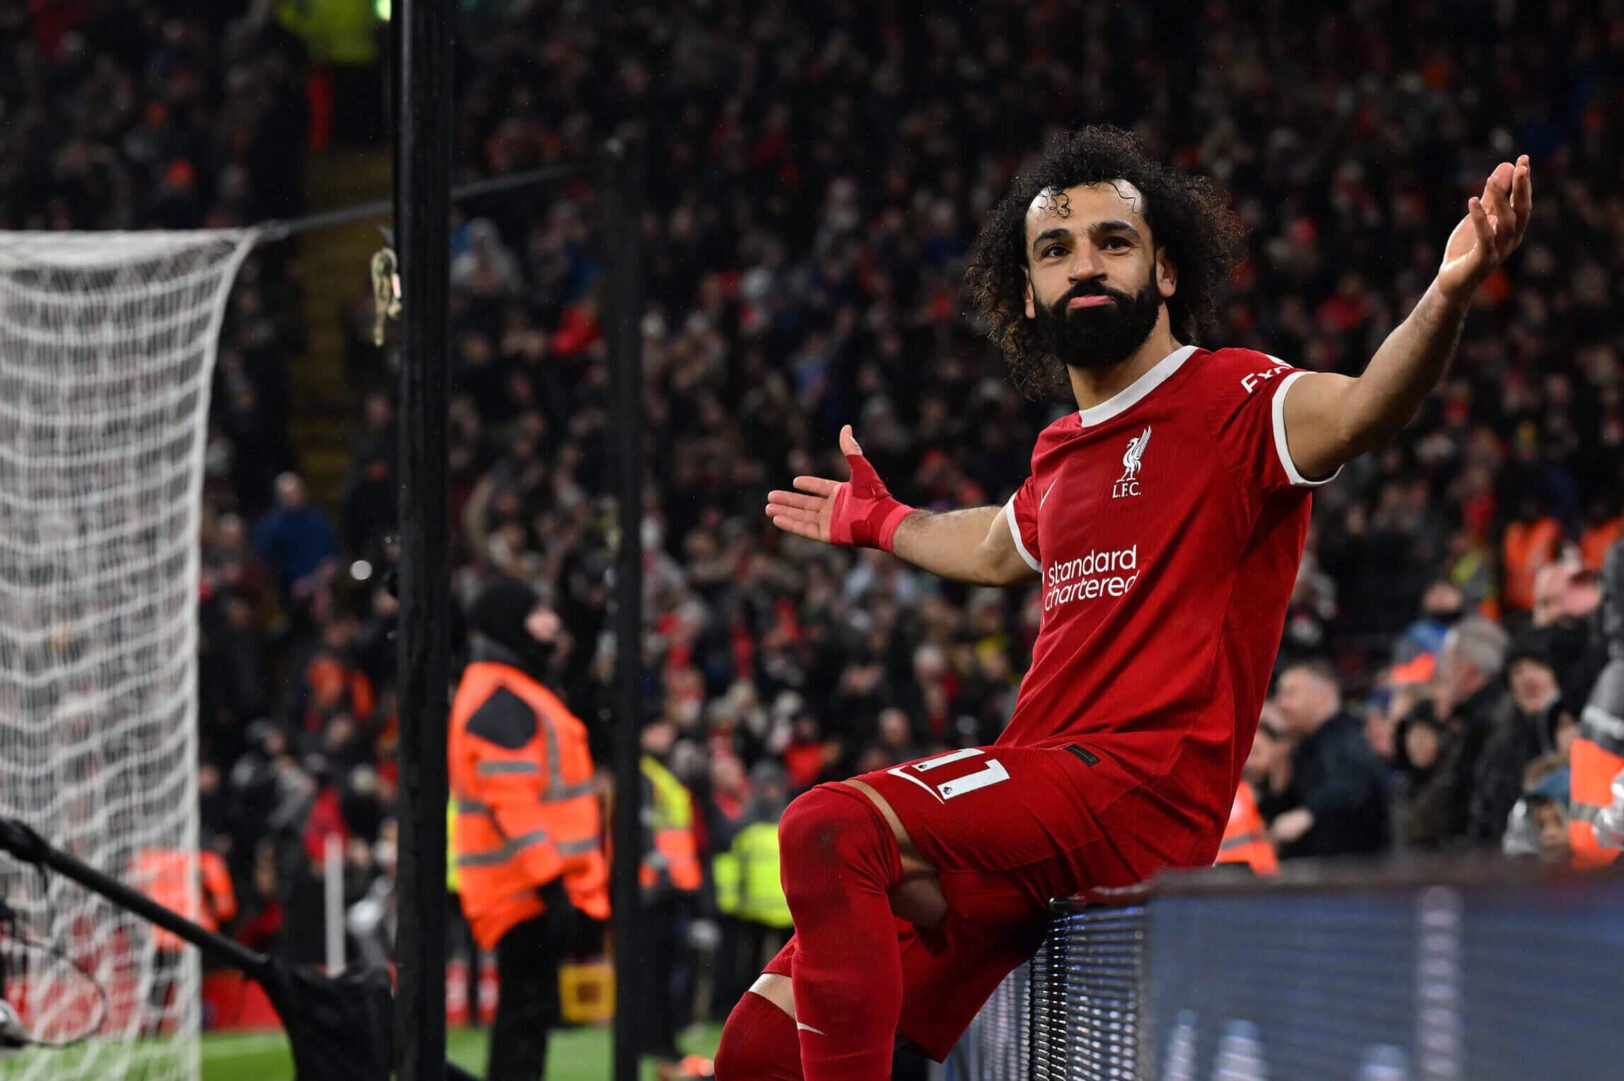 2 jours après la dispute Mohamed Salah - Klopp, Liverpool prend une décision inattendue